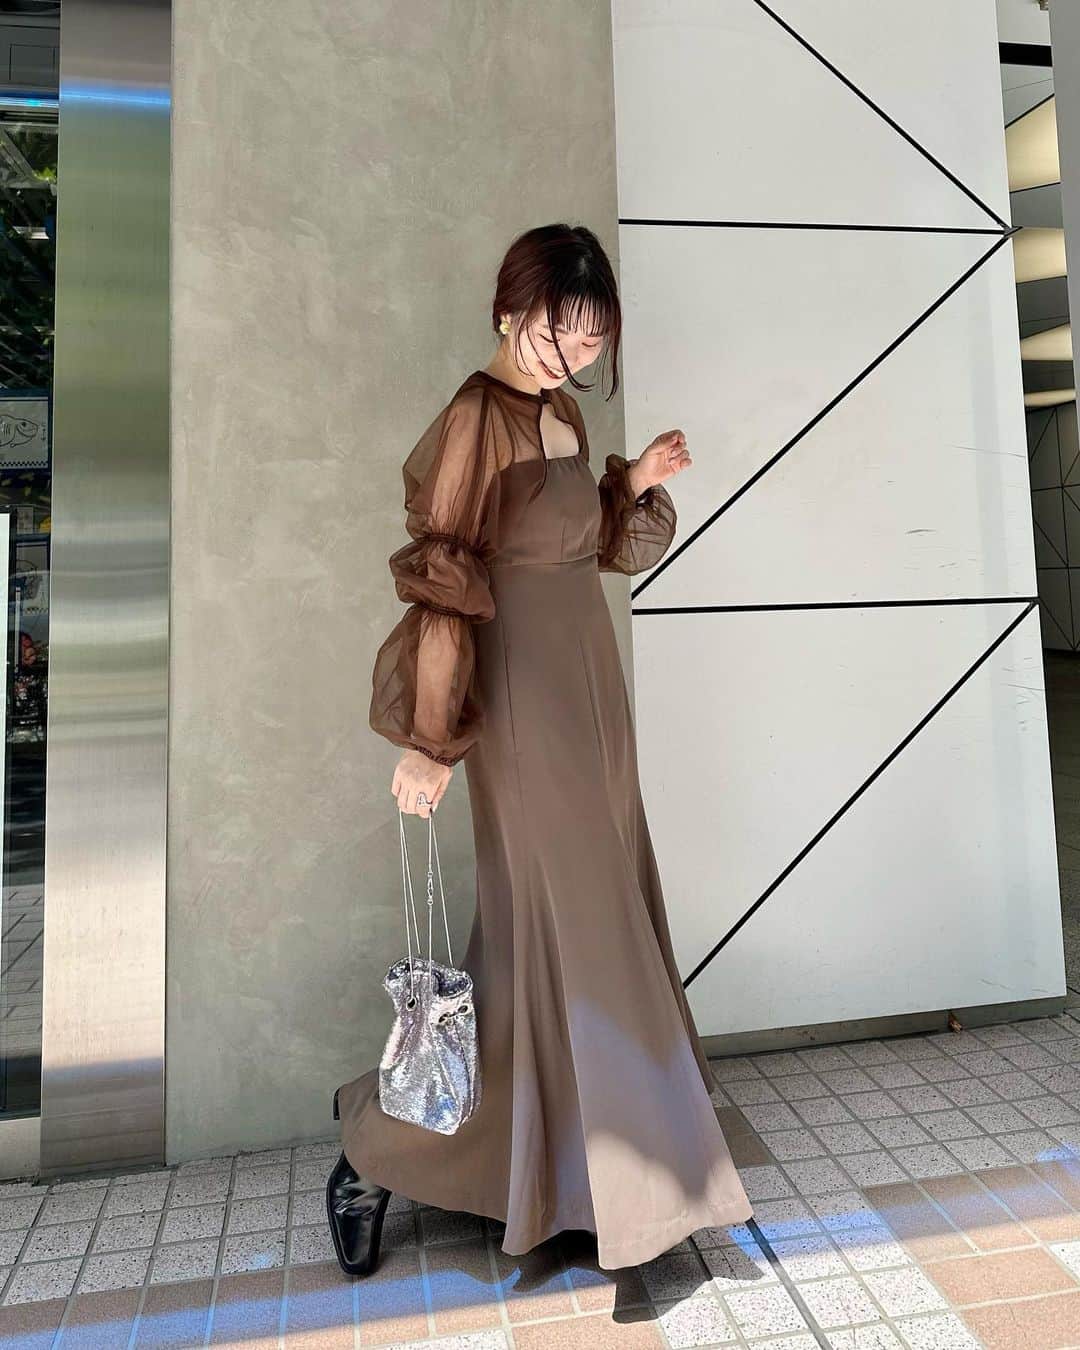 miho uesugiのインスタグラム：「明日から発売のオケージョンドレス、全型着てみました🥹✨ 154cm 全てサイズ0を着用しています！  ㅤㅤㅤㅤㅤㅤㅤㅤㅤㅤㅤㅤㅤ 着心地はすごく楽なのに、身体のラインを綺麗に見せてくれる…感動✨ ㅤㅤㅤㅤㅤㅤㅤㅤㅤㅤㅤㅤㅤ  @the_urbanblanche さんと、 @mari19k のこだわりを随所に感じます🥹 私は1番最後のドレスを狙っています✍️ ㅤㅤㅤㅤㅤㅤㅤㅤㅤㅤㅤㅤㅤ  ㅤㅤㅤㅤㅤㅤㅤㅤㅤㅤㅤㅤㅤ 来るべきお呼ばれ、デート、女子会のために準備しておきませんか？  ㅤㅤㅤㅤㅤㅤㅤㅤㅤㅤㅤㅤㅤ #theurbanblanche_kastane  #kastane_occasion  #theurbanblanche #お呼ばれ#お呼ばれコーデ#デートコーデ#デート#オケージョンドレス#オケージョン#ドレス#パーティドレス#パーティコーデ#二次会#二次会コーデ#結婚式#結婚式コーデ#ワンピース#パンプス#バッグ#Kastane#Kastane舞浜#舞浜#イクスピアリ#骨格ウェーブ#イエベ春#ヘアアレンジ#大人カジュアル#大人コーデ#30代コーデ#30代ファッション」